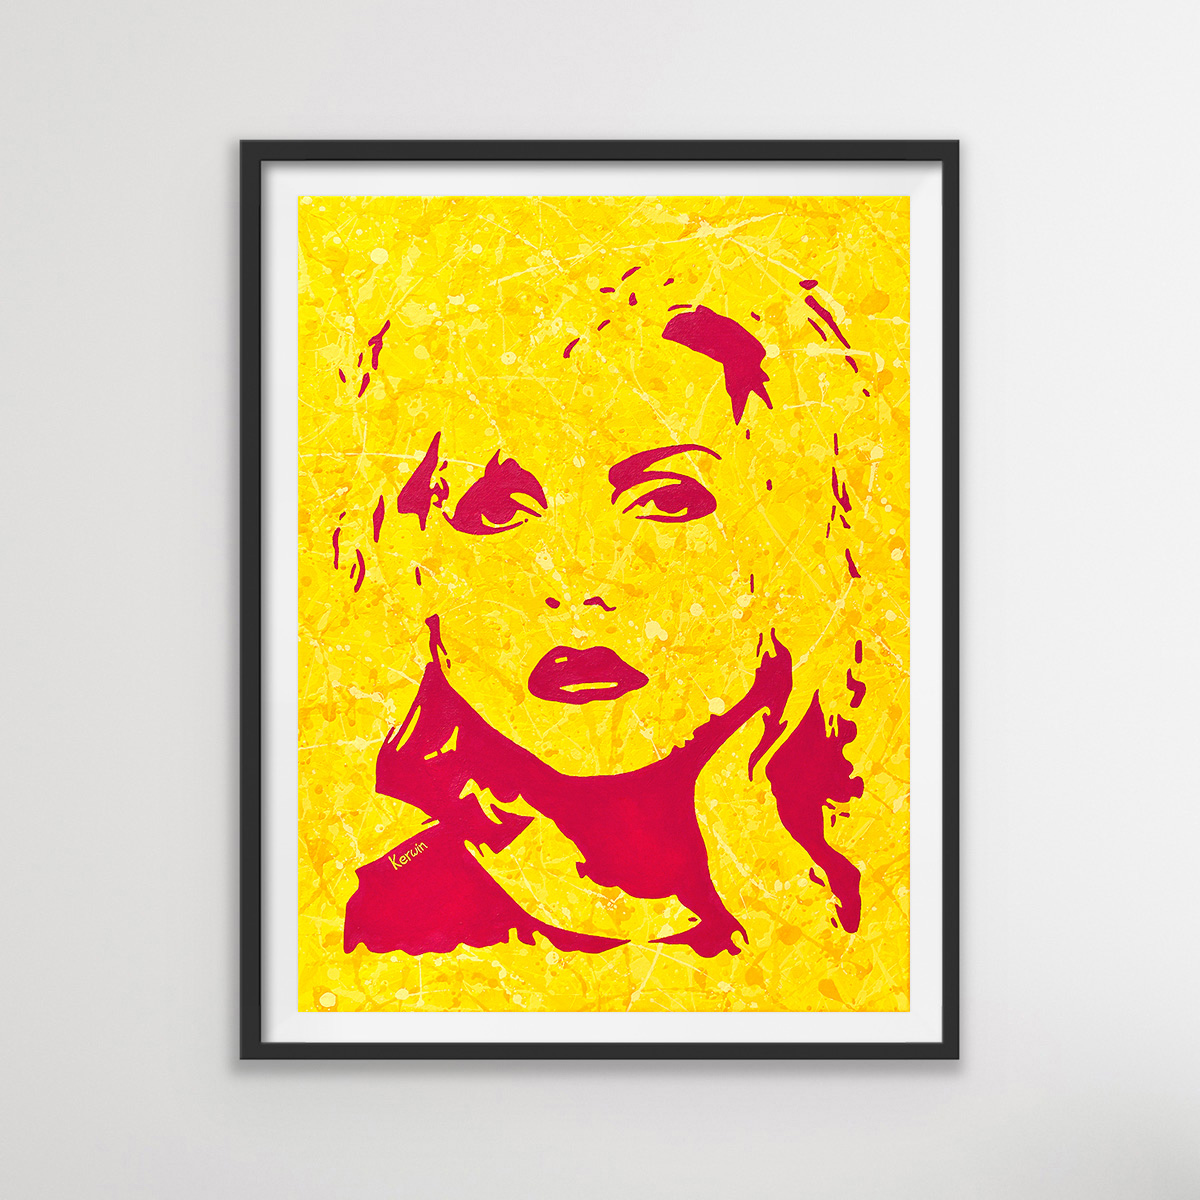 Blondie-Debbie Harry pop art music painting & poster prints | By Kerwin